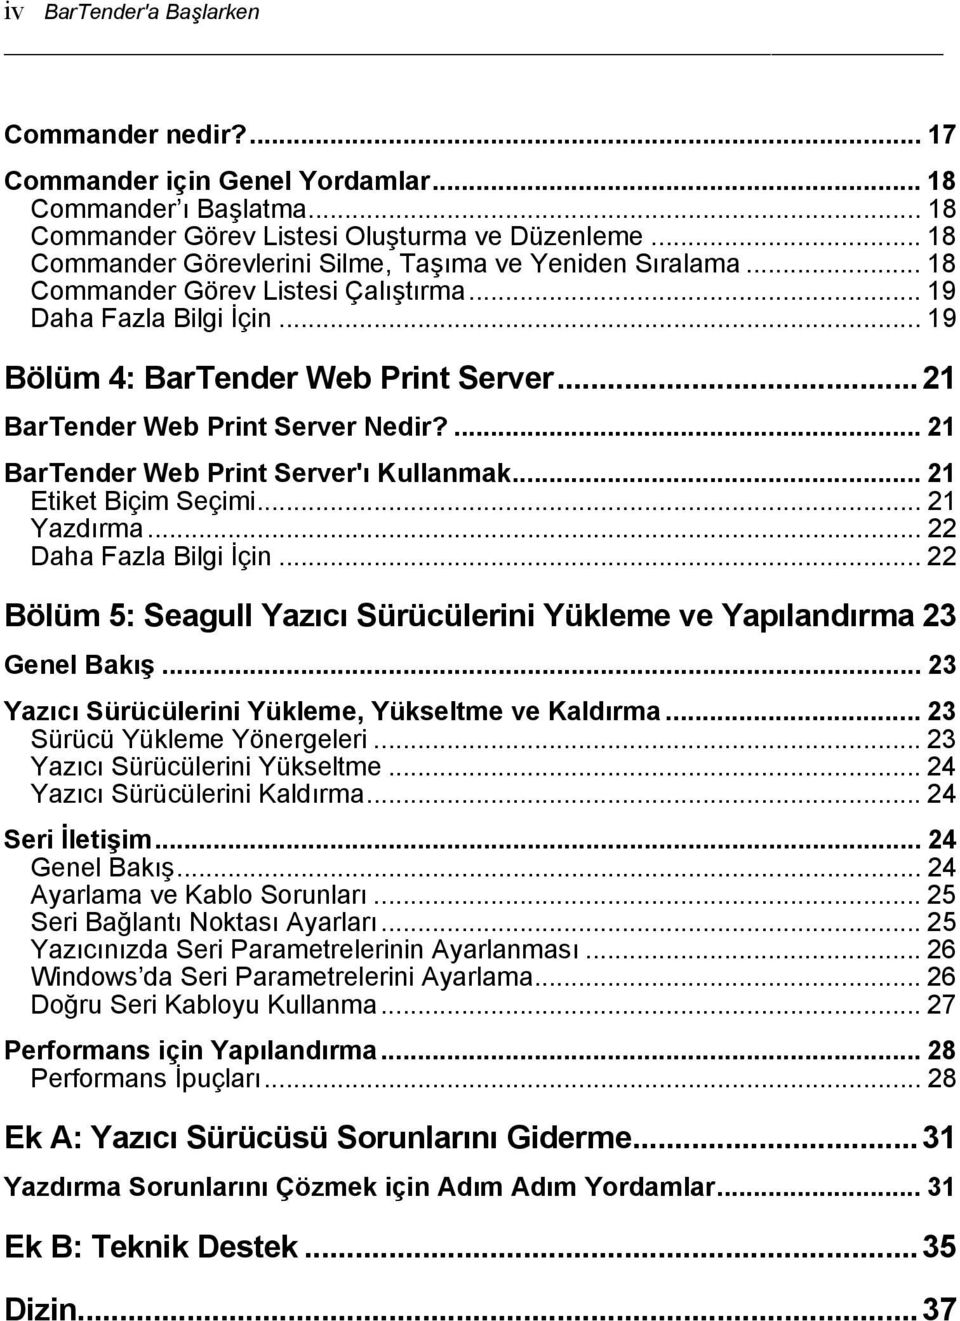 ..21 BarTender Web Print Server Nedir?... 21 BarTender Web Print Server'ı Kullanmak... 21 Etiket Biçim Seçimi... 21 Yazdırma... 22 Daha Fazla Bilgi İçin.